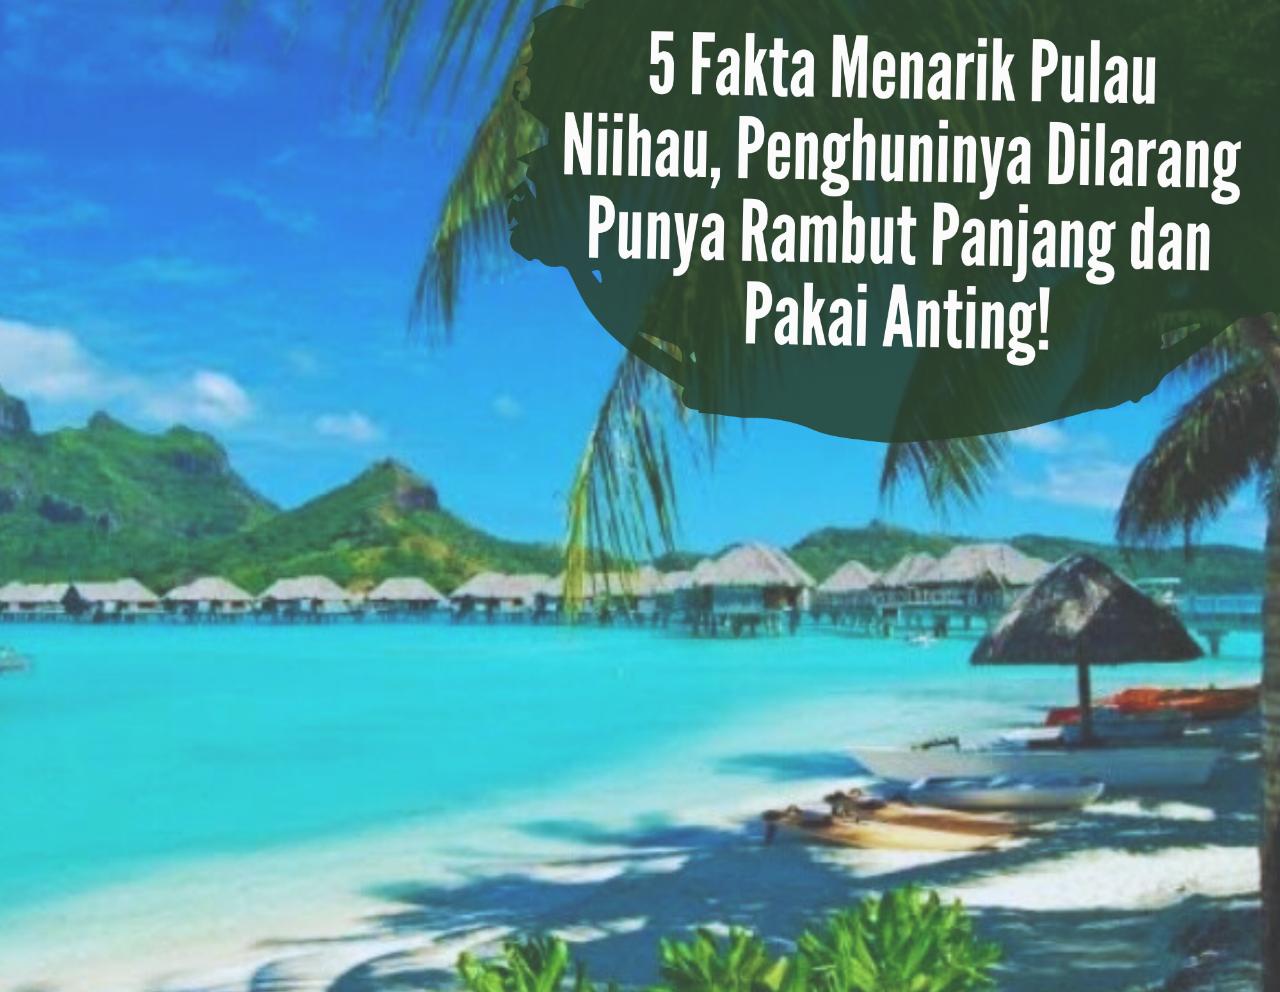 5 Fakta Menarik Pulau Niihau! Penghuninya Dilarang Punya Rambut Panjang dan Pakai Anting